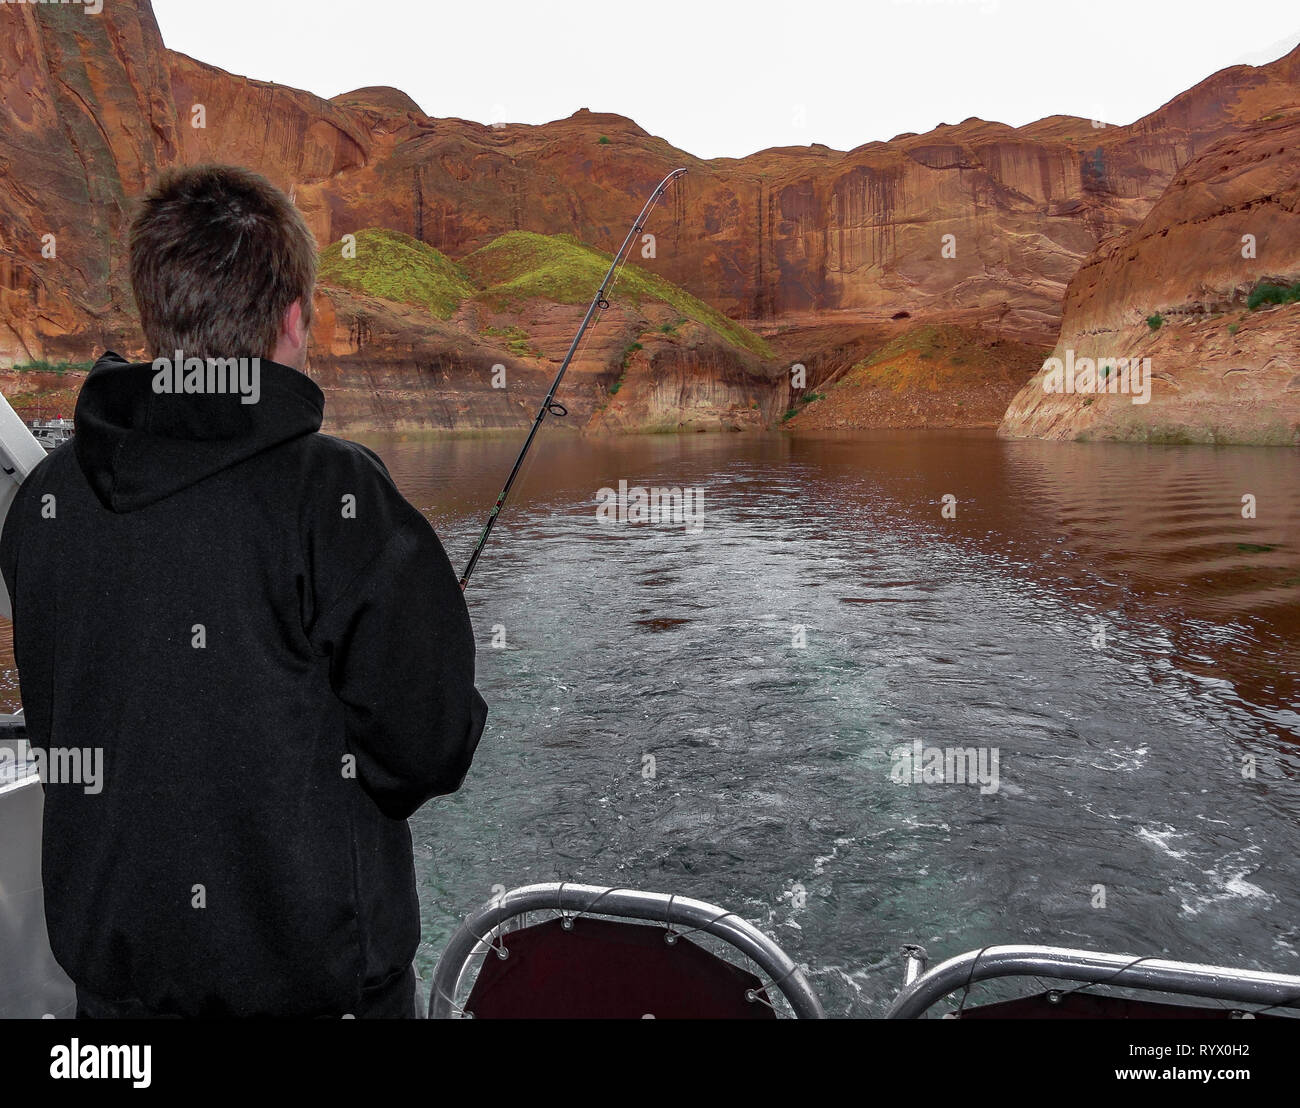 Un uomo pesca al largo della parte posteriore di una barca sul lago nel deserto. Foto Stock